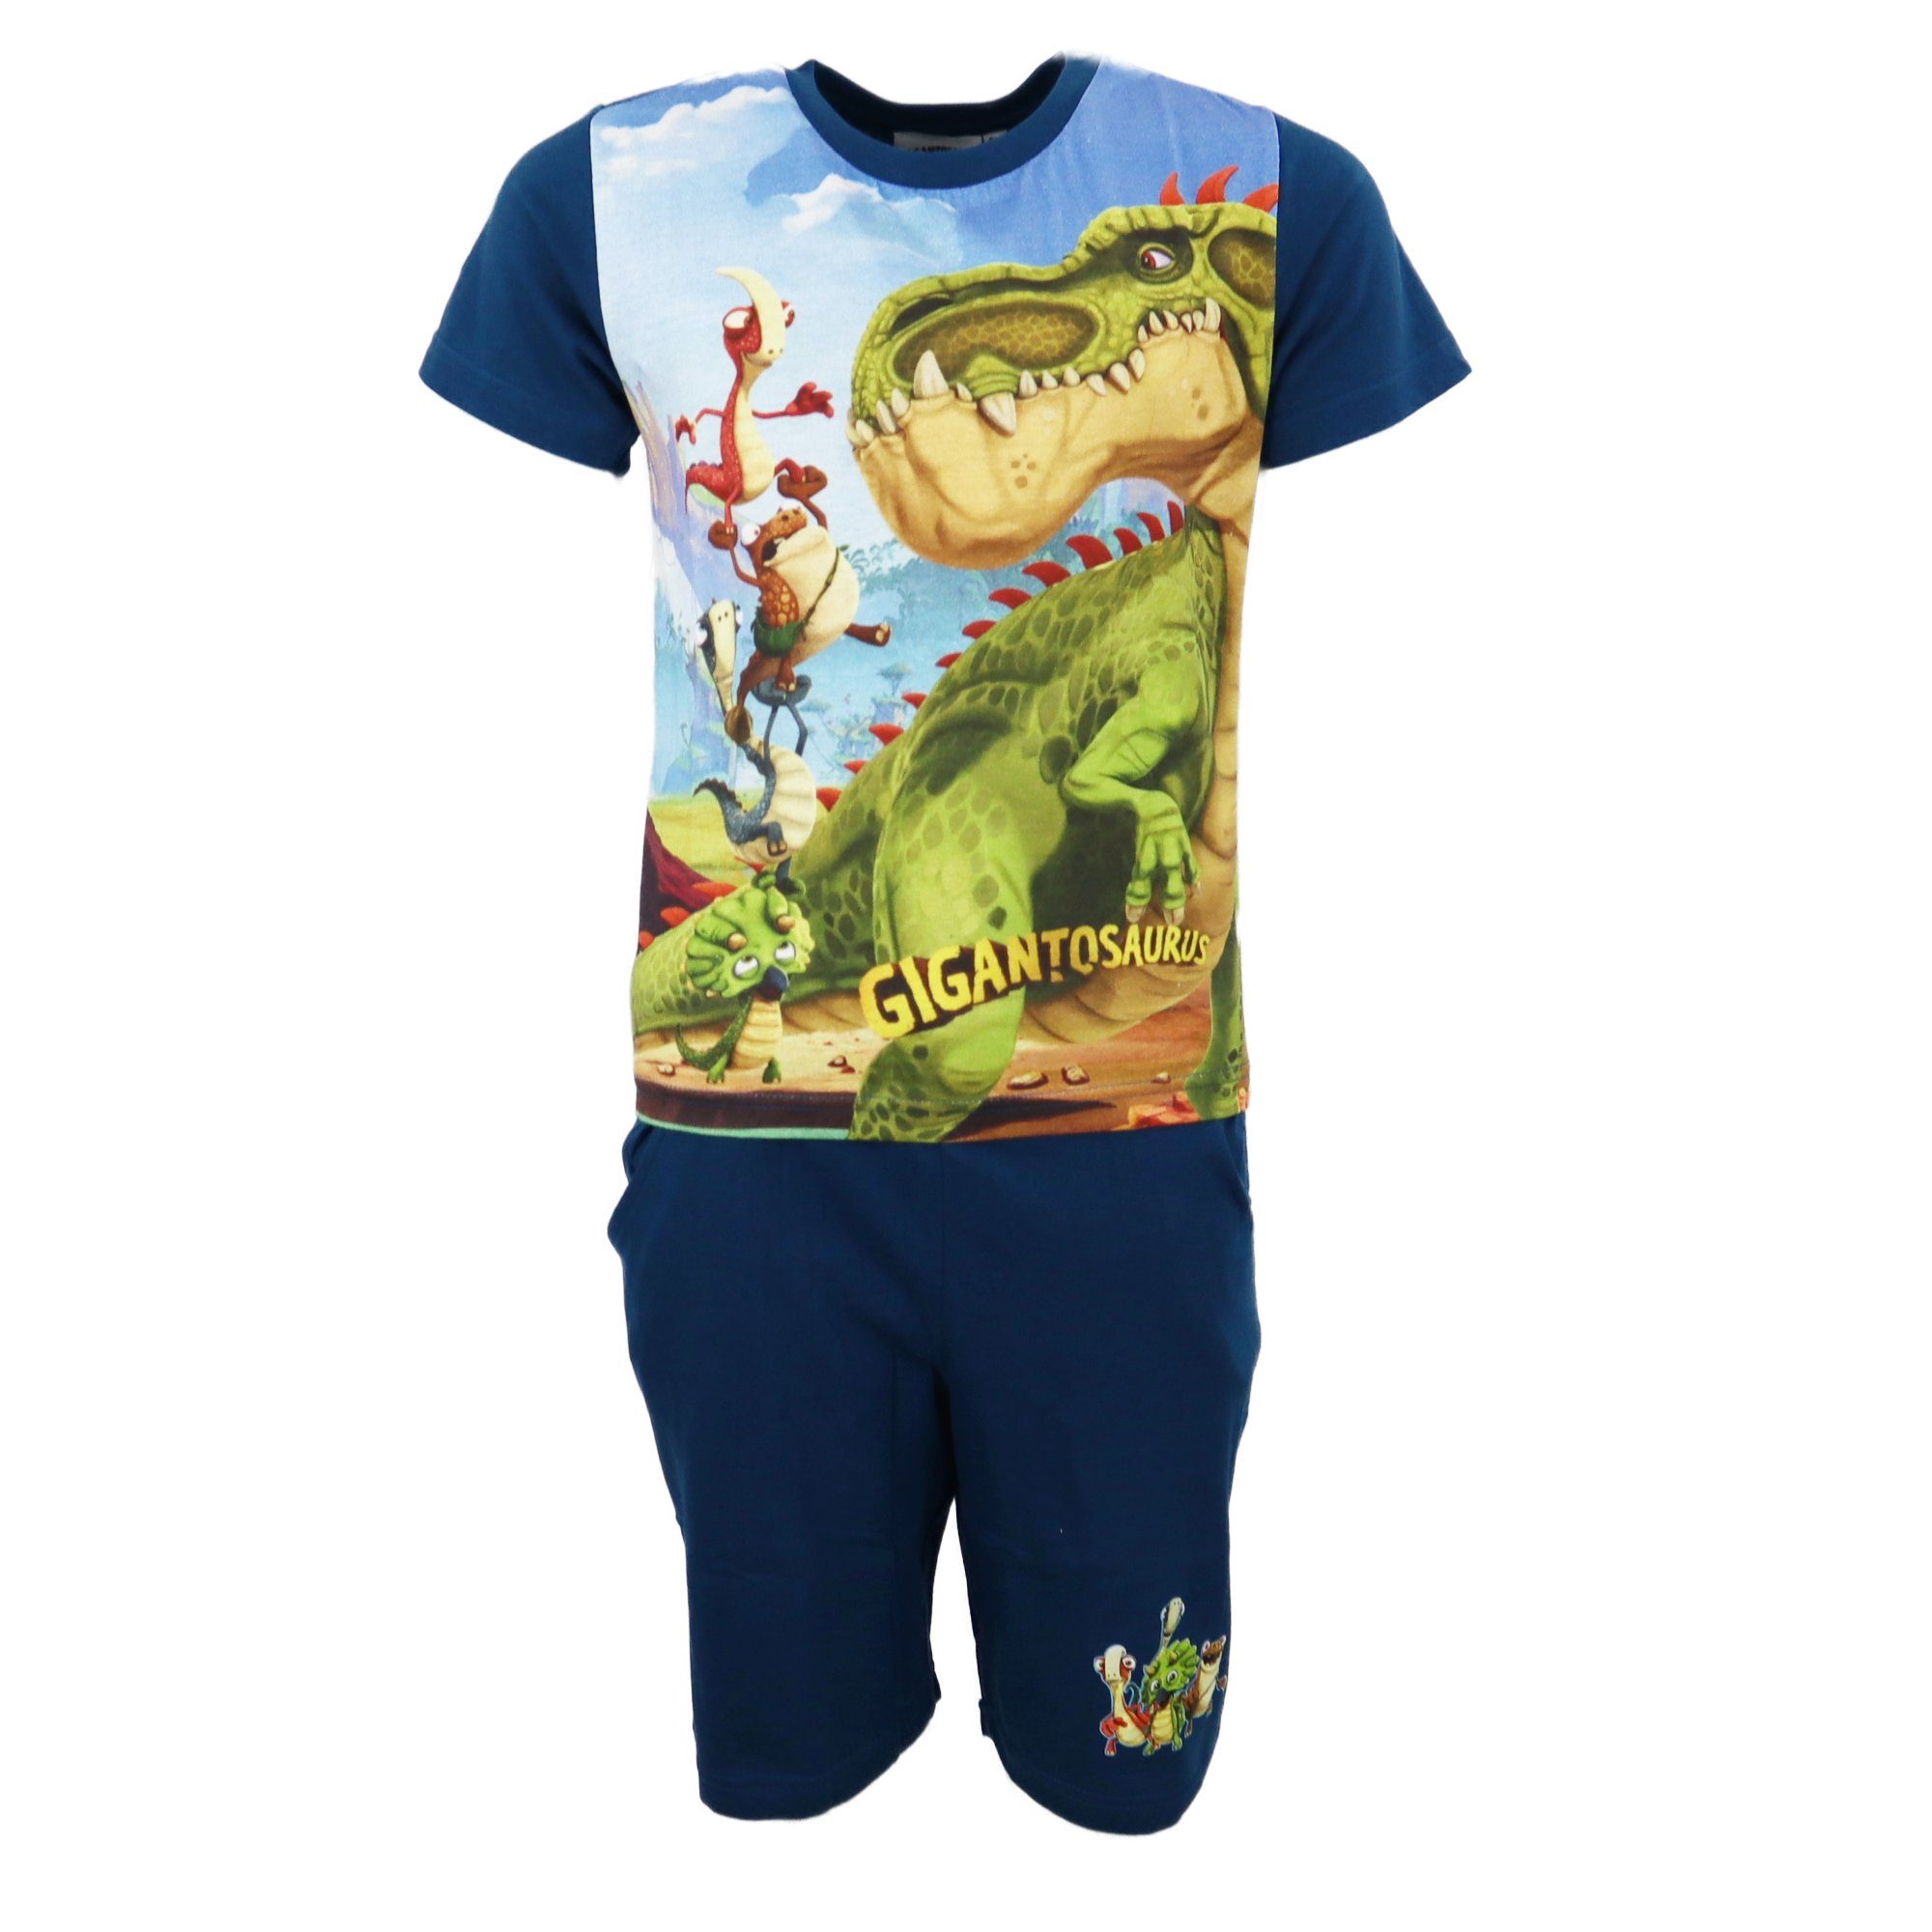 Cyber Group Studios Schlafanzug Gigantosaurus Kinder Jungen Pyjama Gr. 98 bis 128 - 100% Baumwolle Dunkelblau